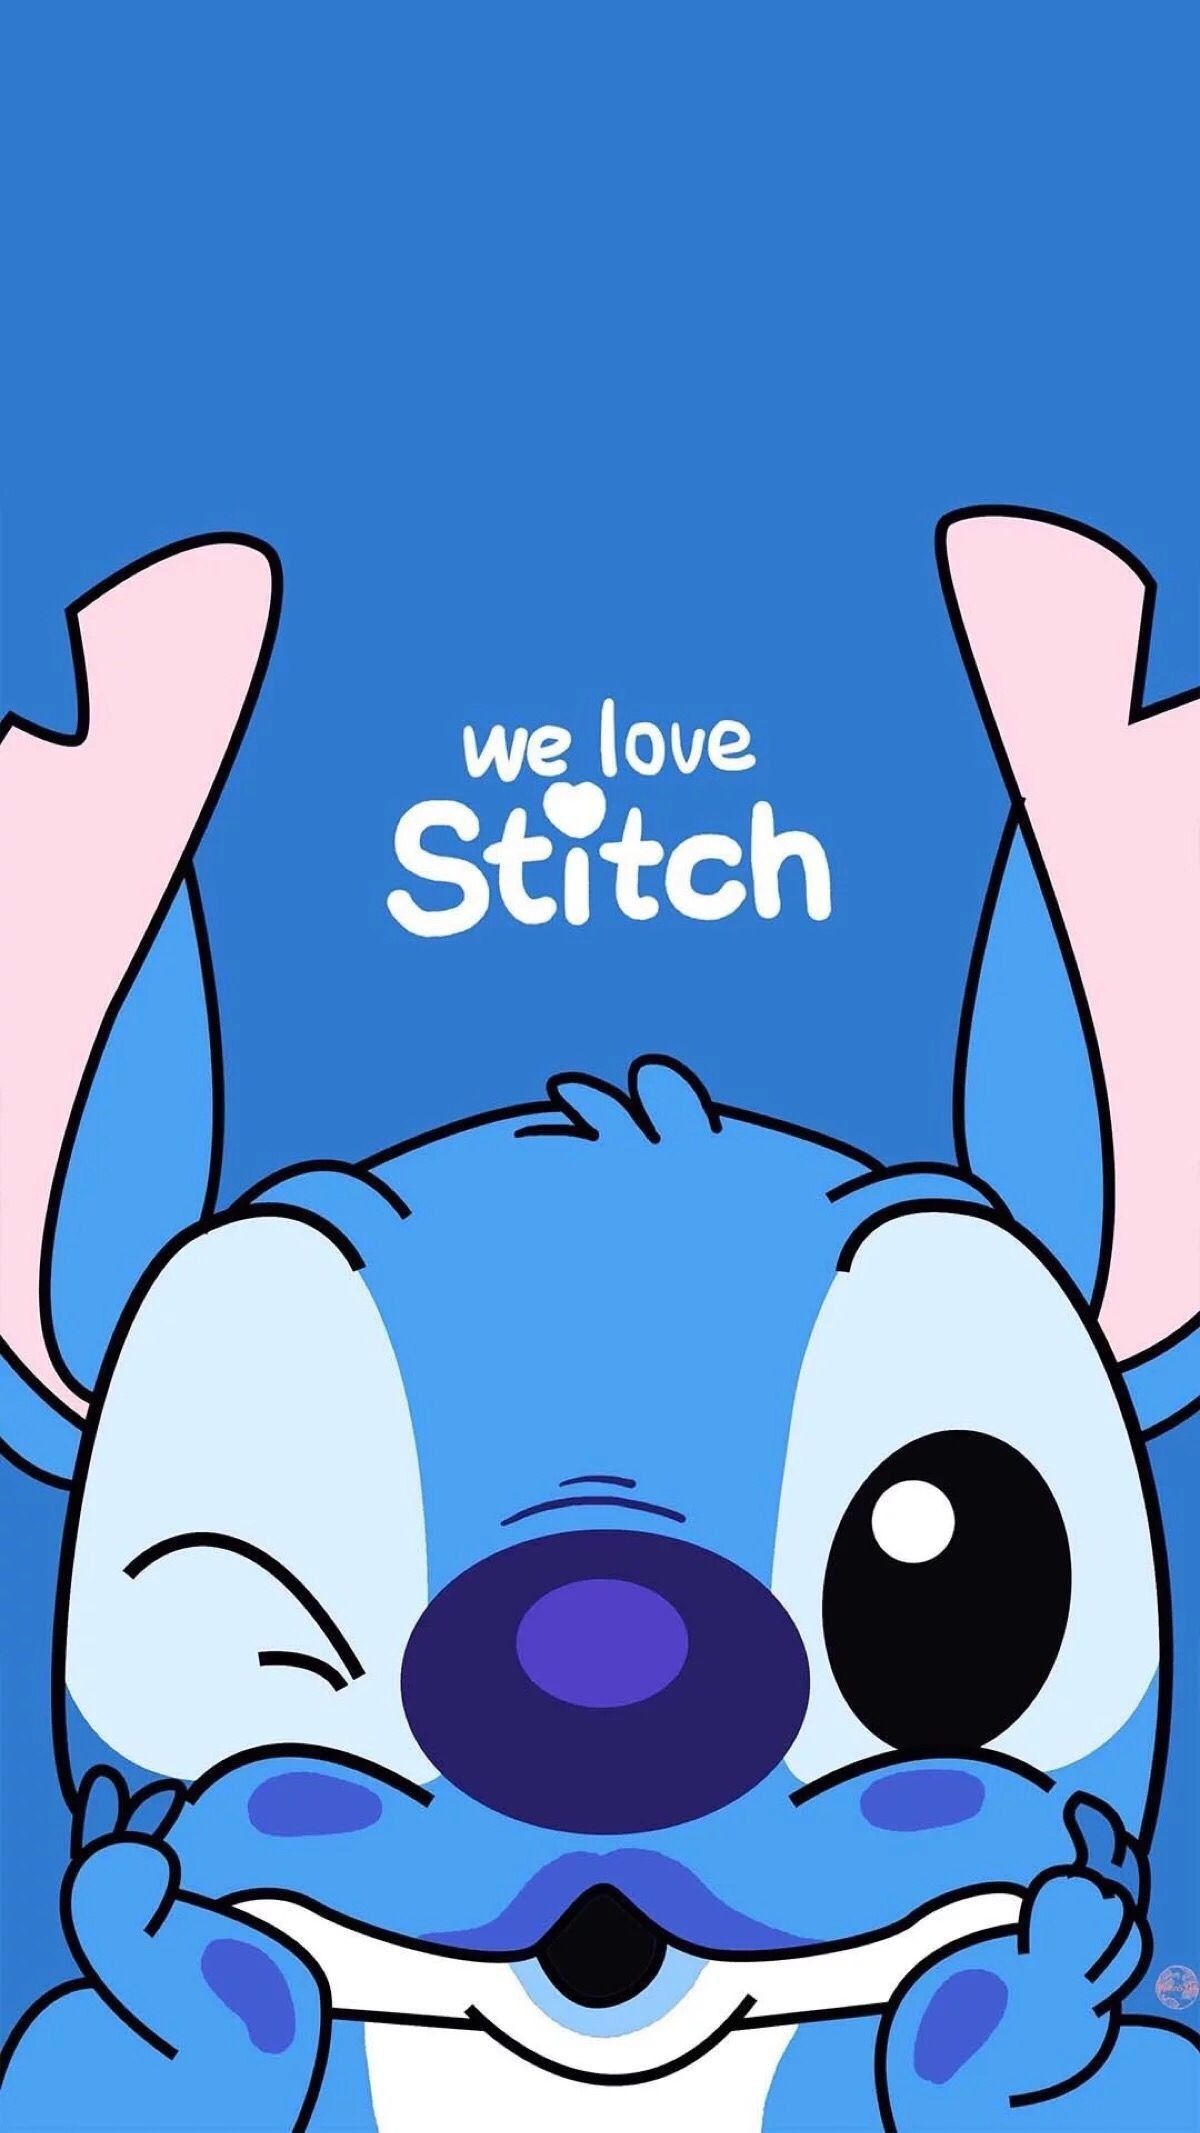 iPhone Stitch Wallpaper Cute We Love .cusdraw.onrender.com